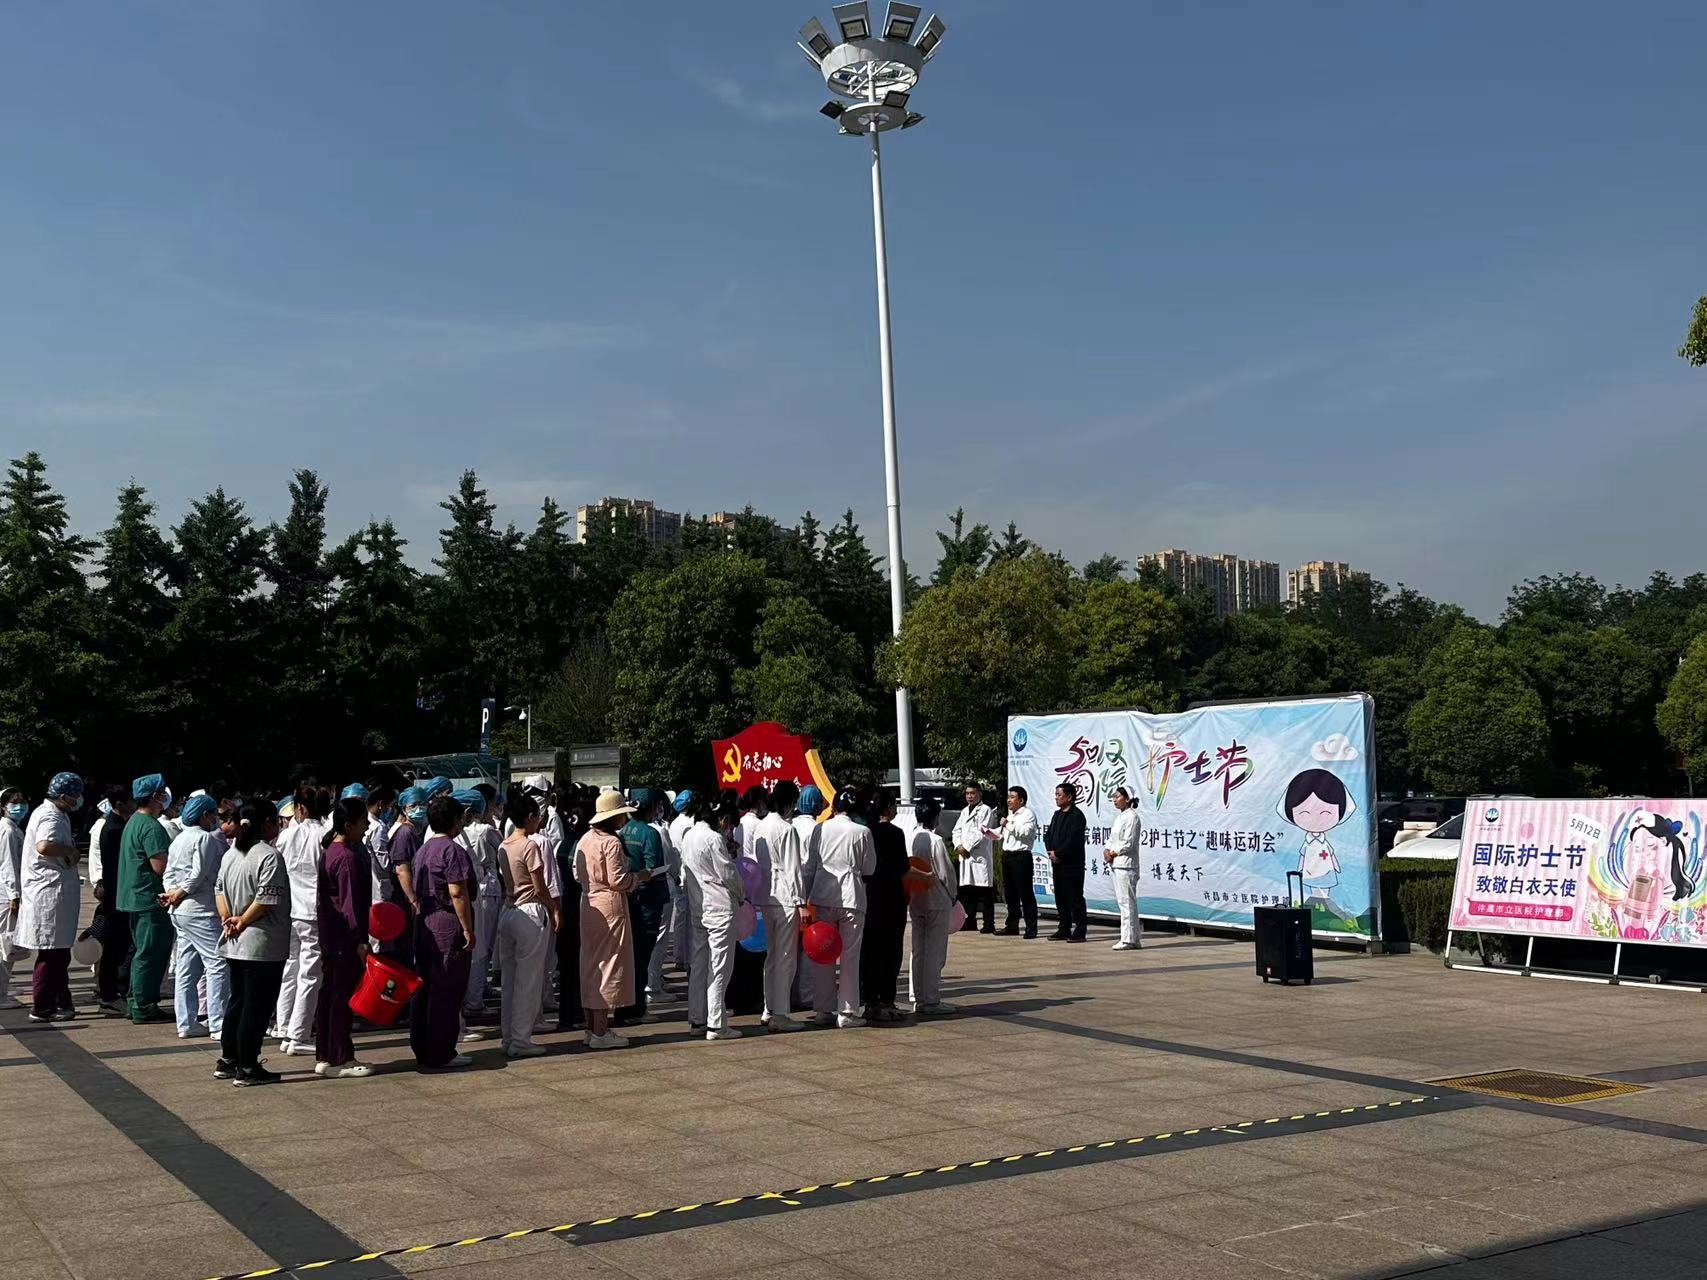 追逐夢想 凝聚力量——許昌市立醫院舉行“慶祝5.12國際護士節職工趣味運動會”